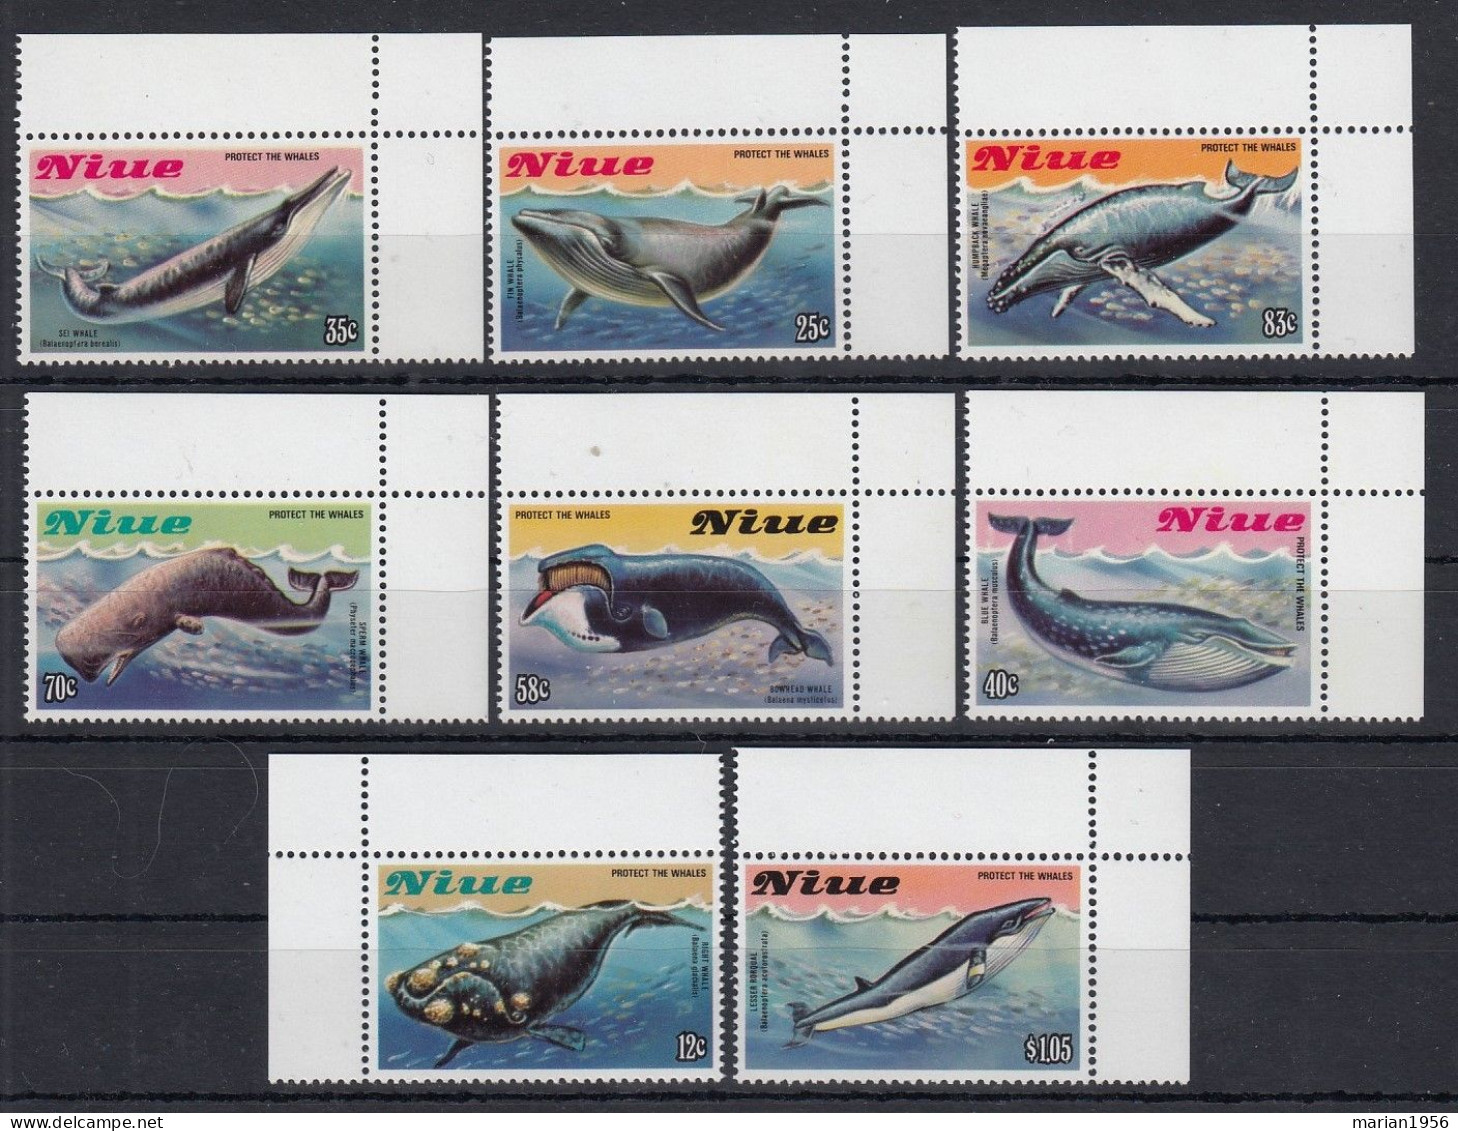 Niue 1983 - Vie Marine - BALEINES - Mich. 38 Eur. - MNH - Baleines